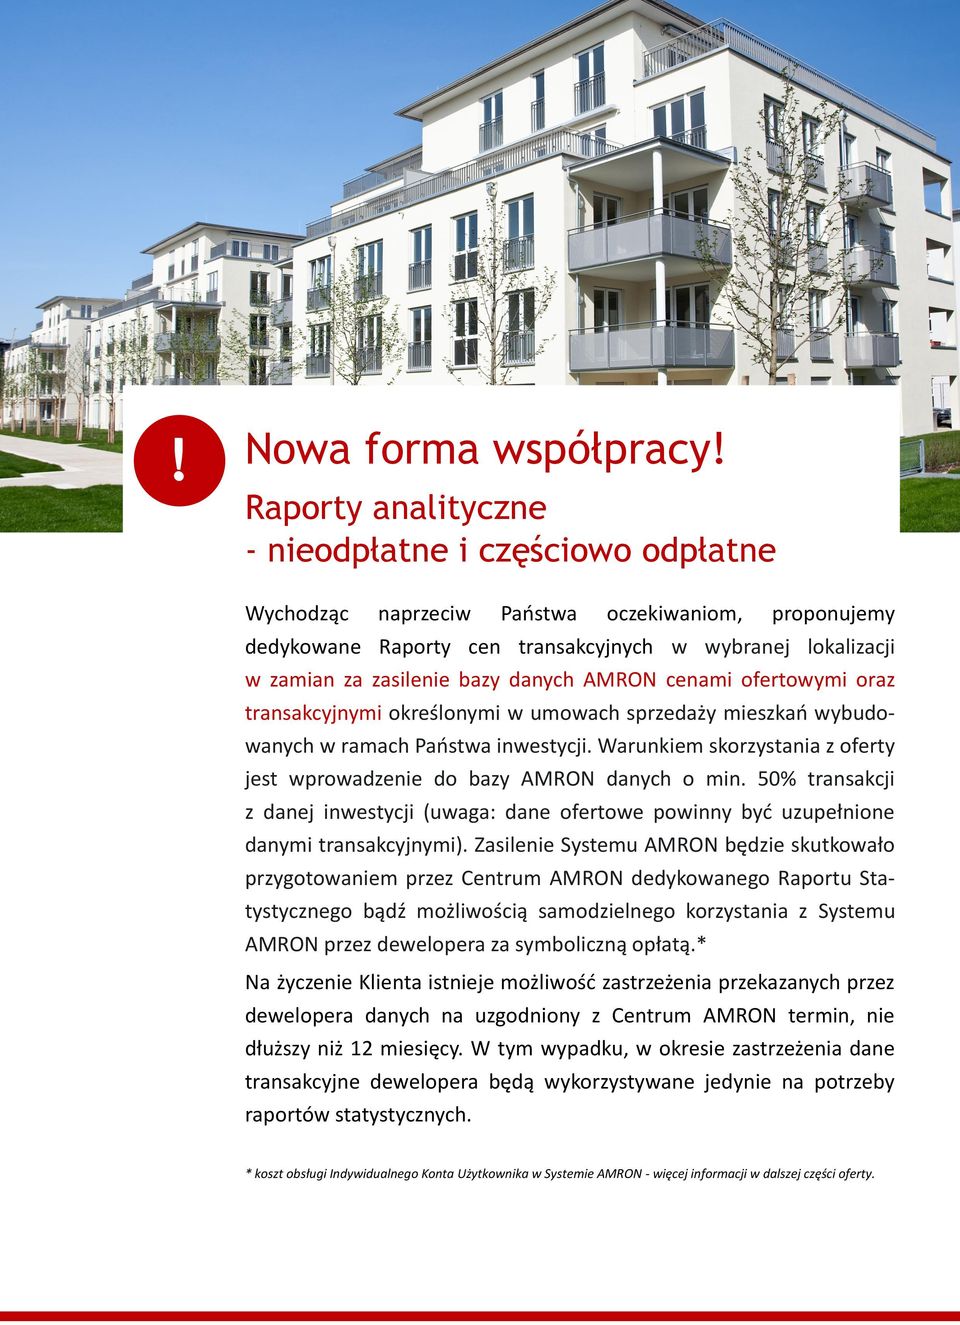 danych AMRON cenami ofertowymi oraz transakcyjnymi określonymi w umowach sprzedaży mieszkań wybudowanych w ramach Państwa inwestycji.